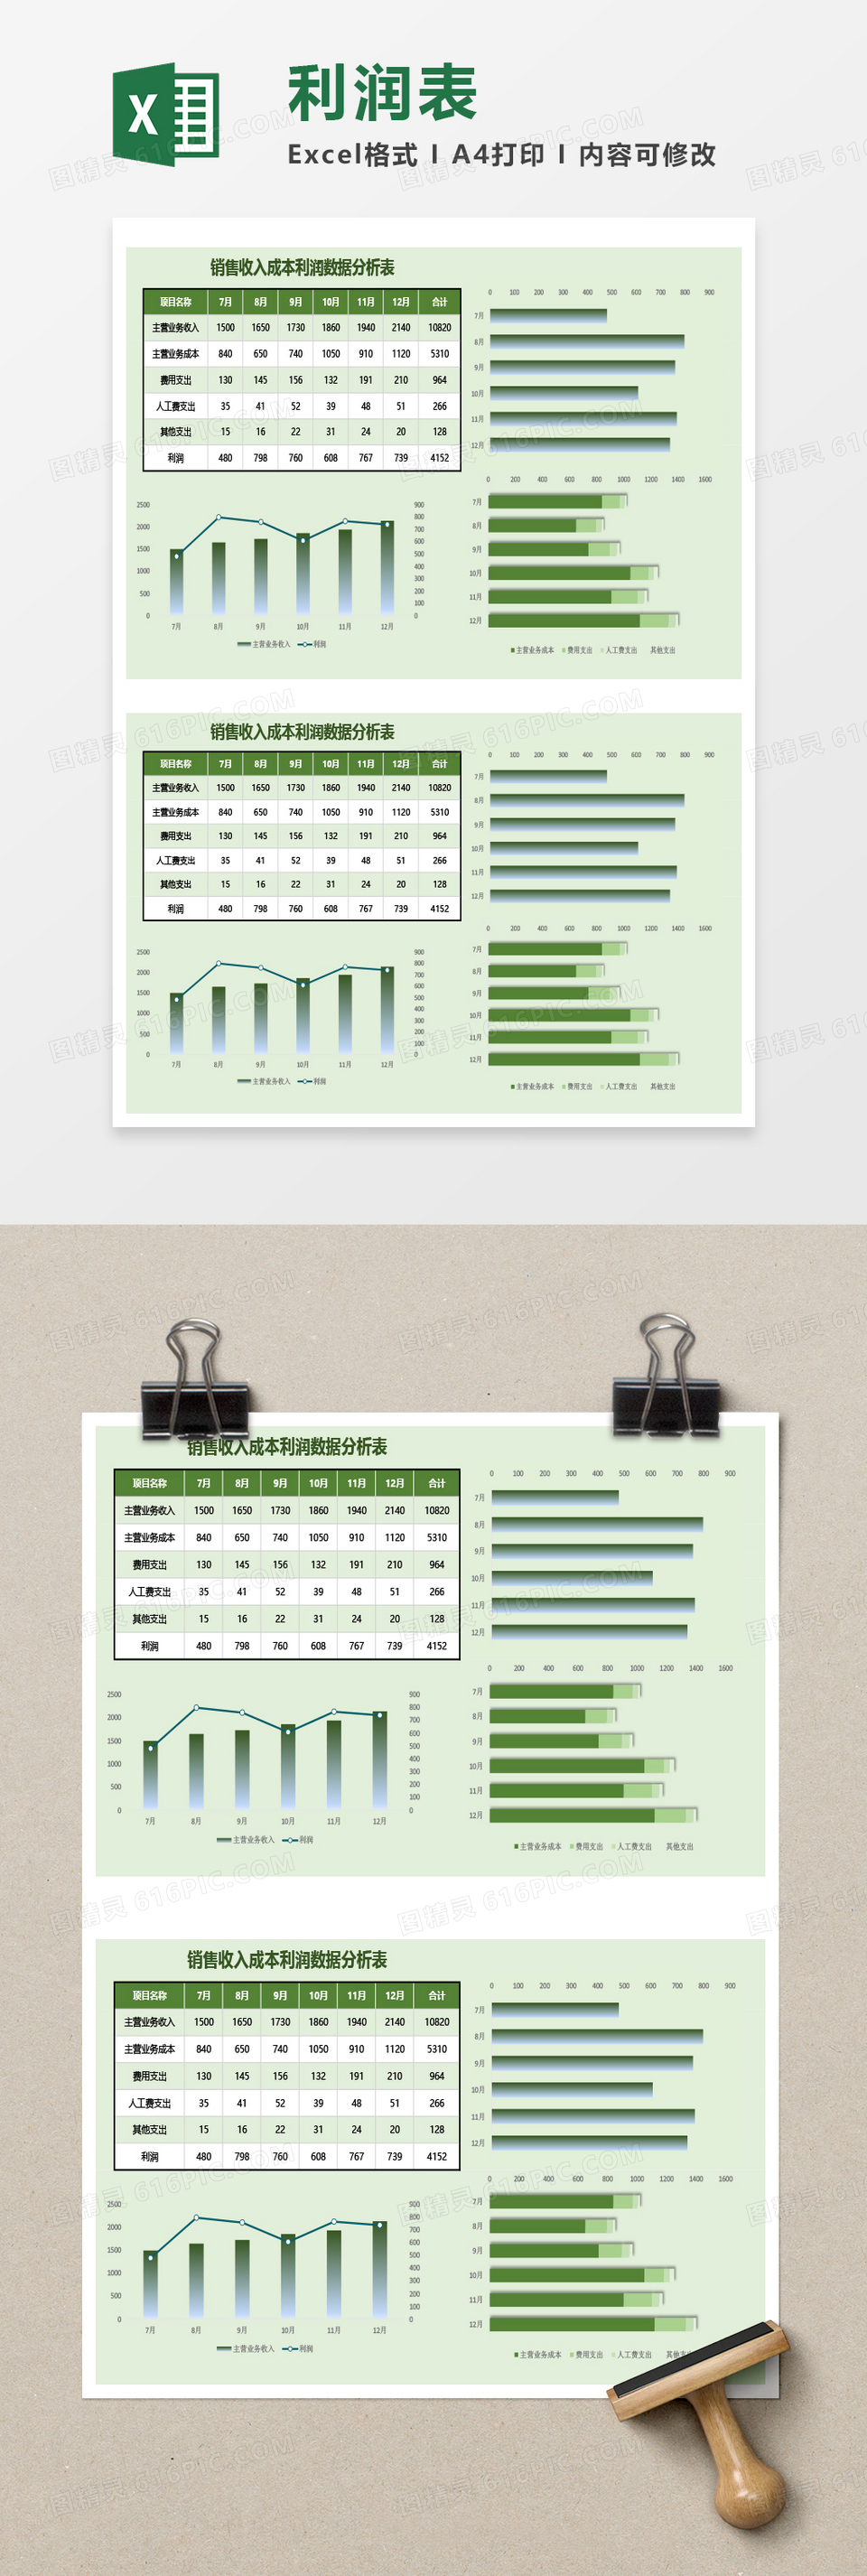 销售收入成本利润数据分析表Excel模板